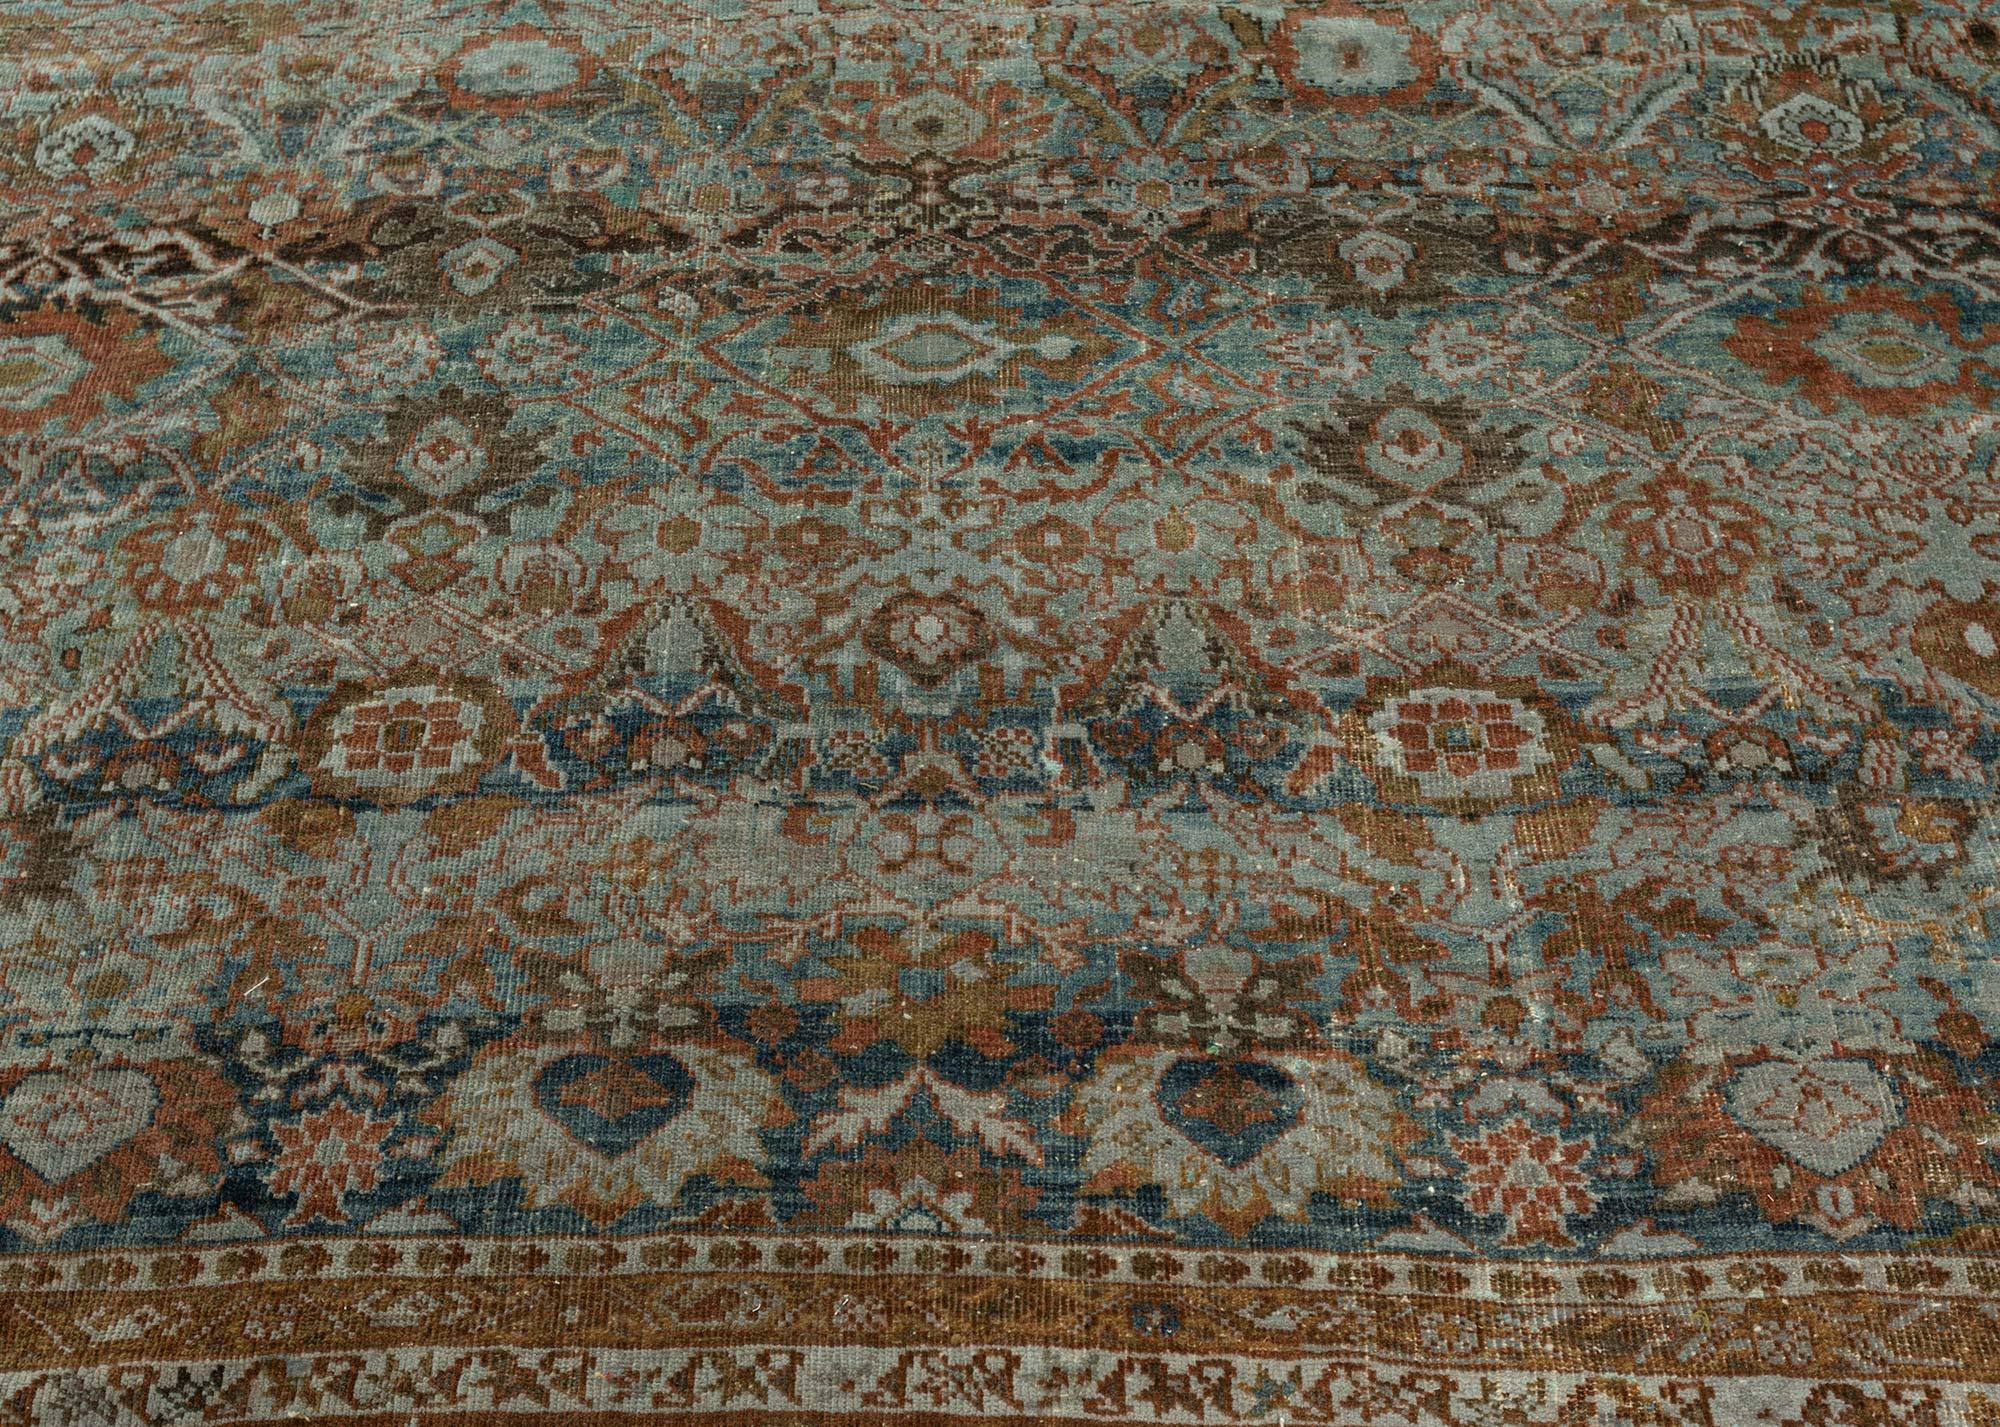 Persischer Sultanabad-Teppich aus dem frühen 20. Jahrhundert.
Größe: 14'7